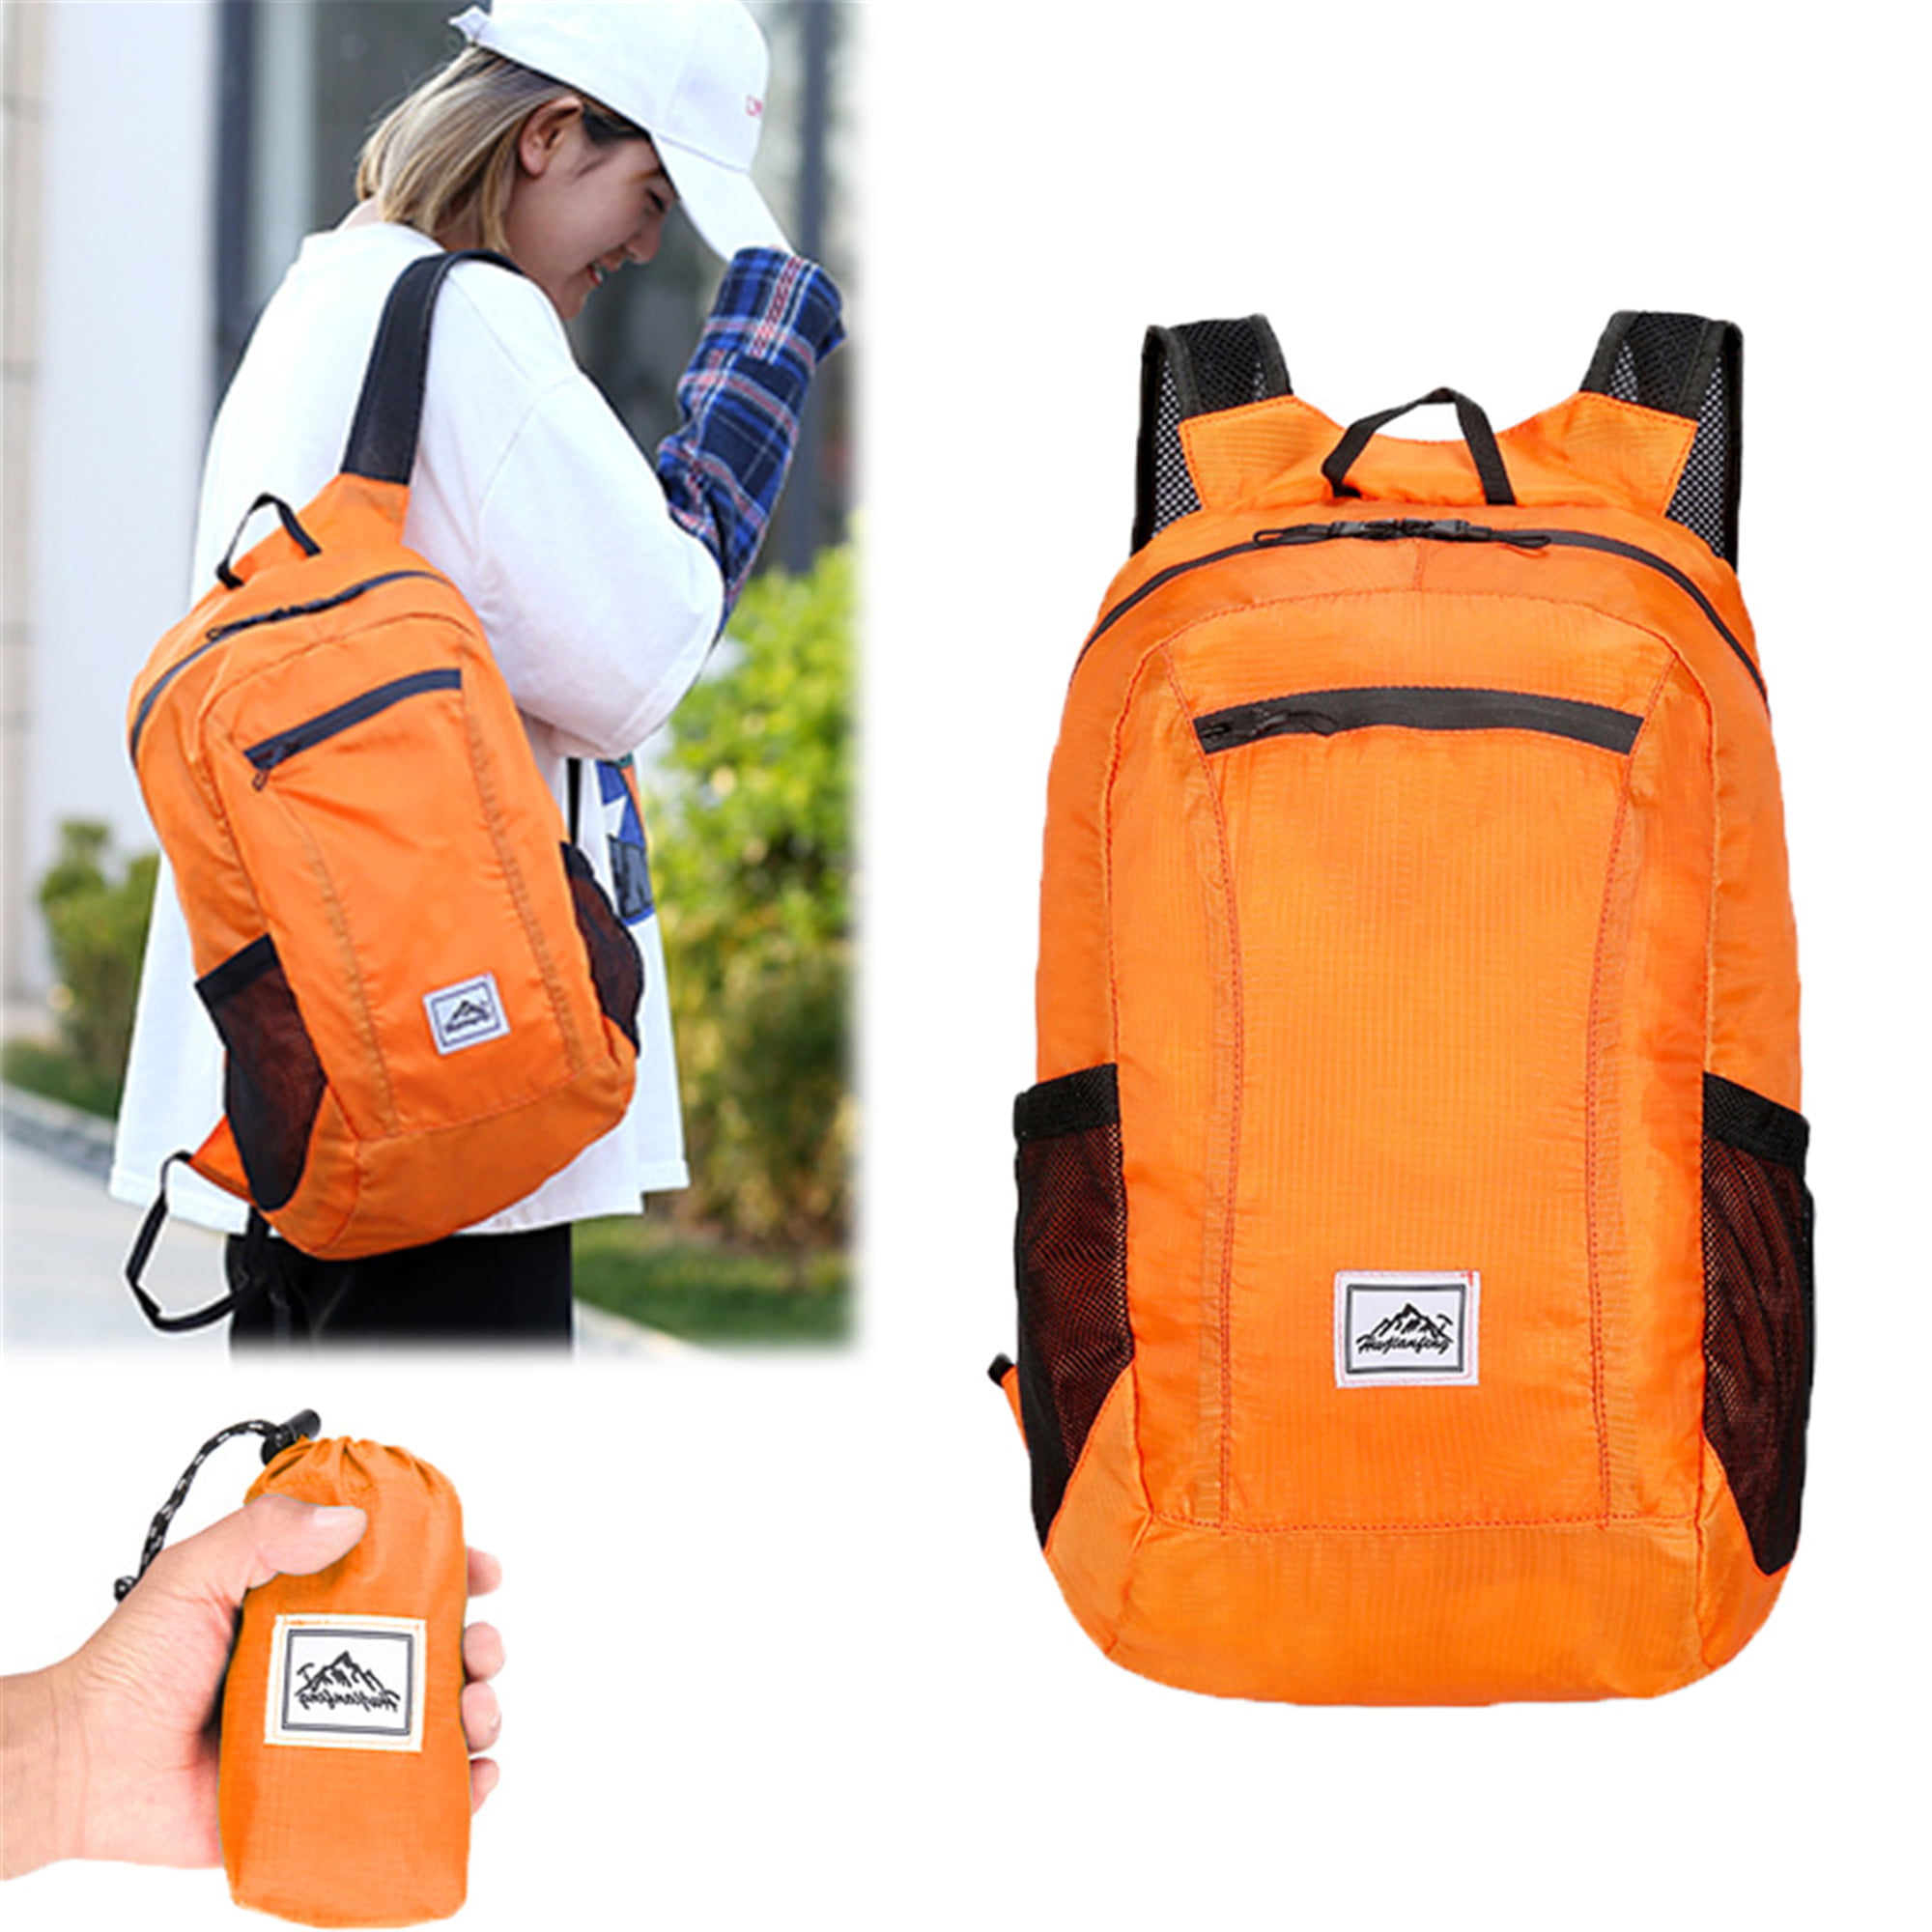 EnviroTrend Foldaway Lightweight Travel Rucksack Backpack Water Resistant Bag 